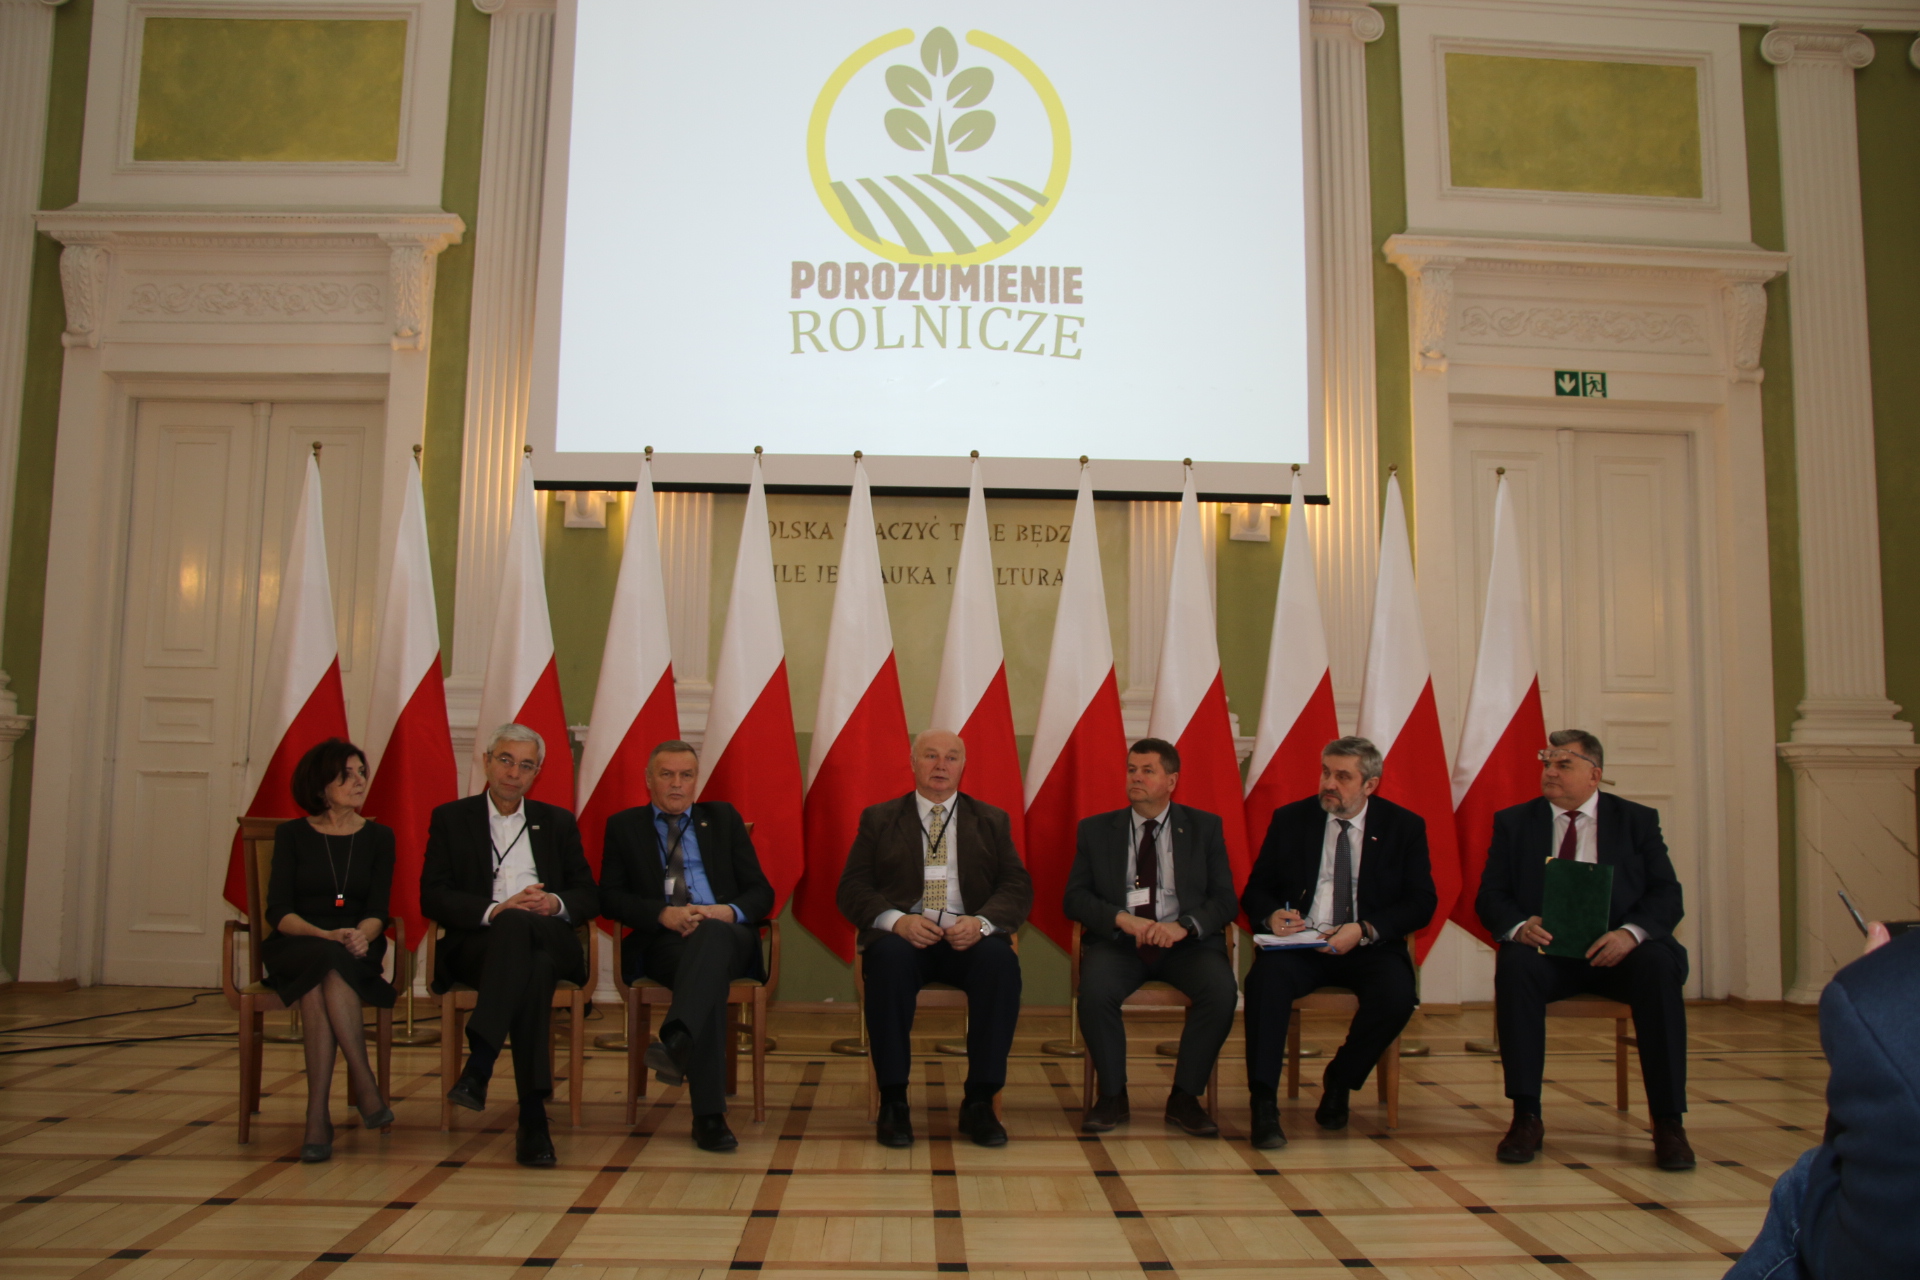 Spotkanie inaugurujące Porozumienie Rolnicze w Centralnej Bibliotece Rolniczej w Warszawie